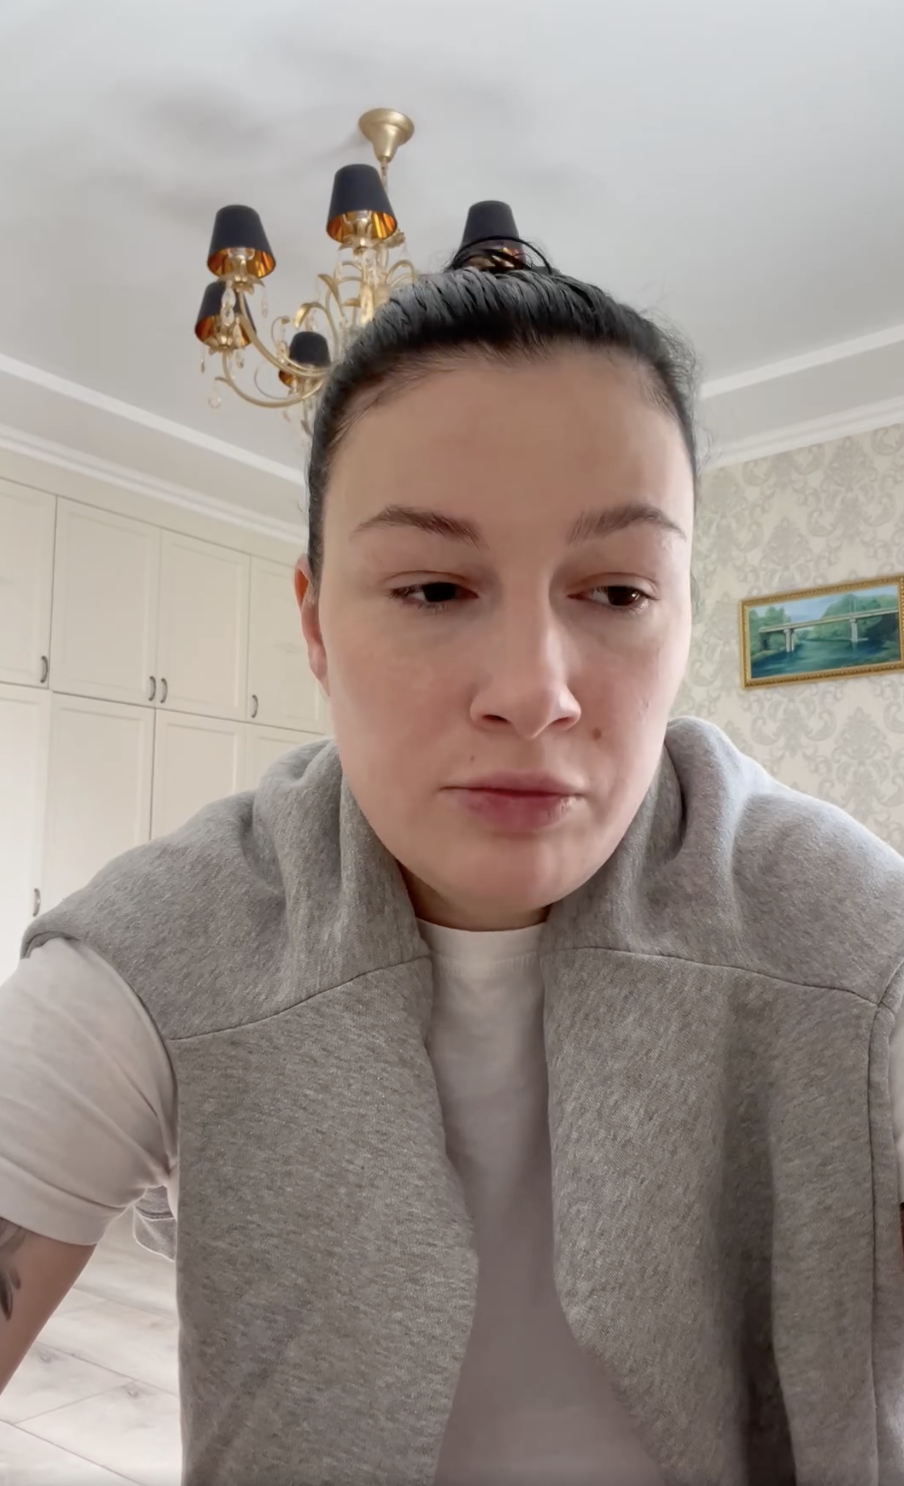 Анастасия Приходько впервые прокомментировала трагедию в Трускавце и назвала причину смерти своего концертного менеджера Григория Красницкого